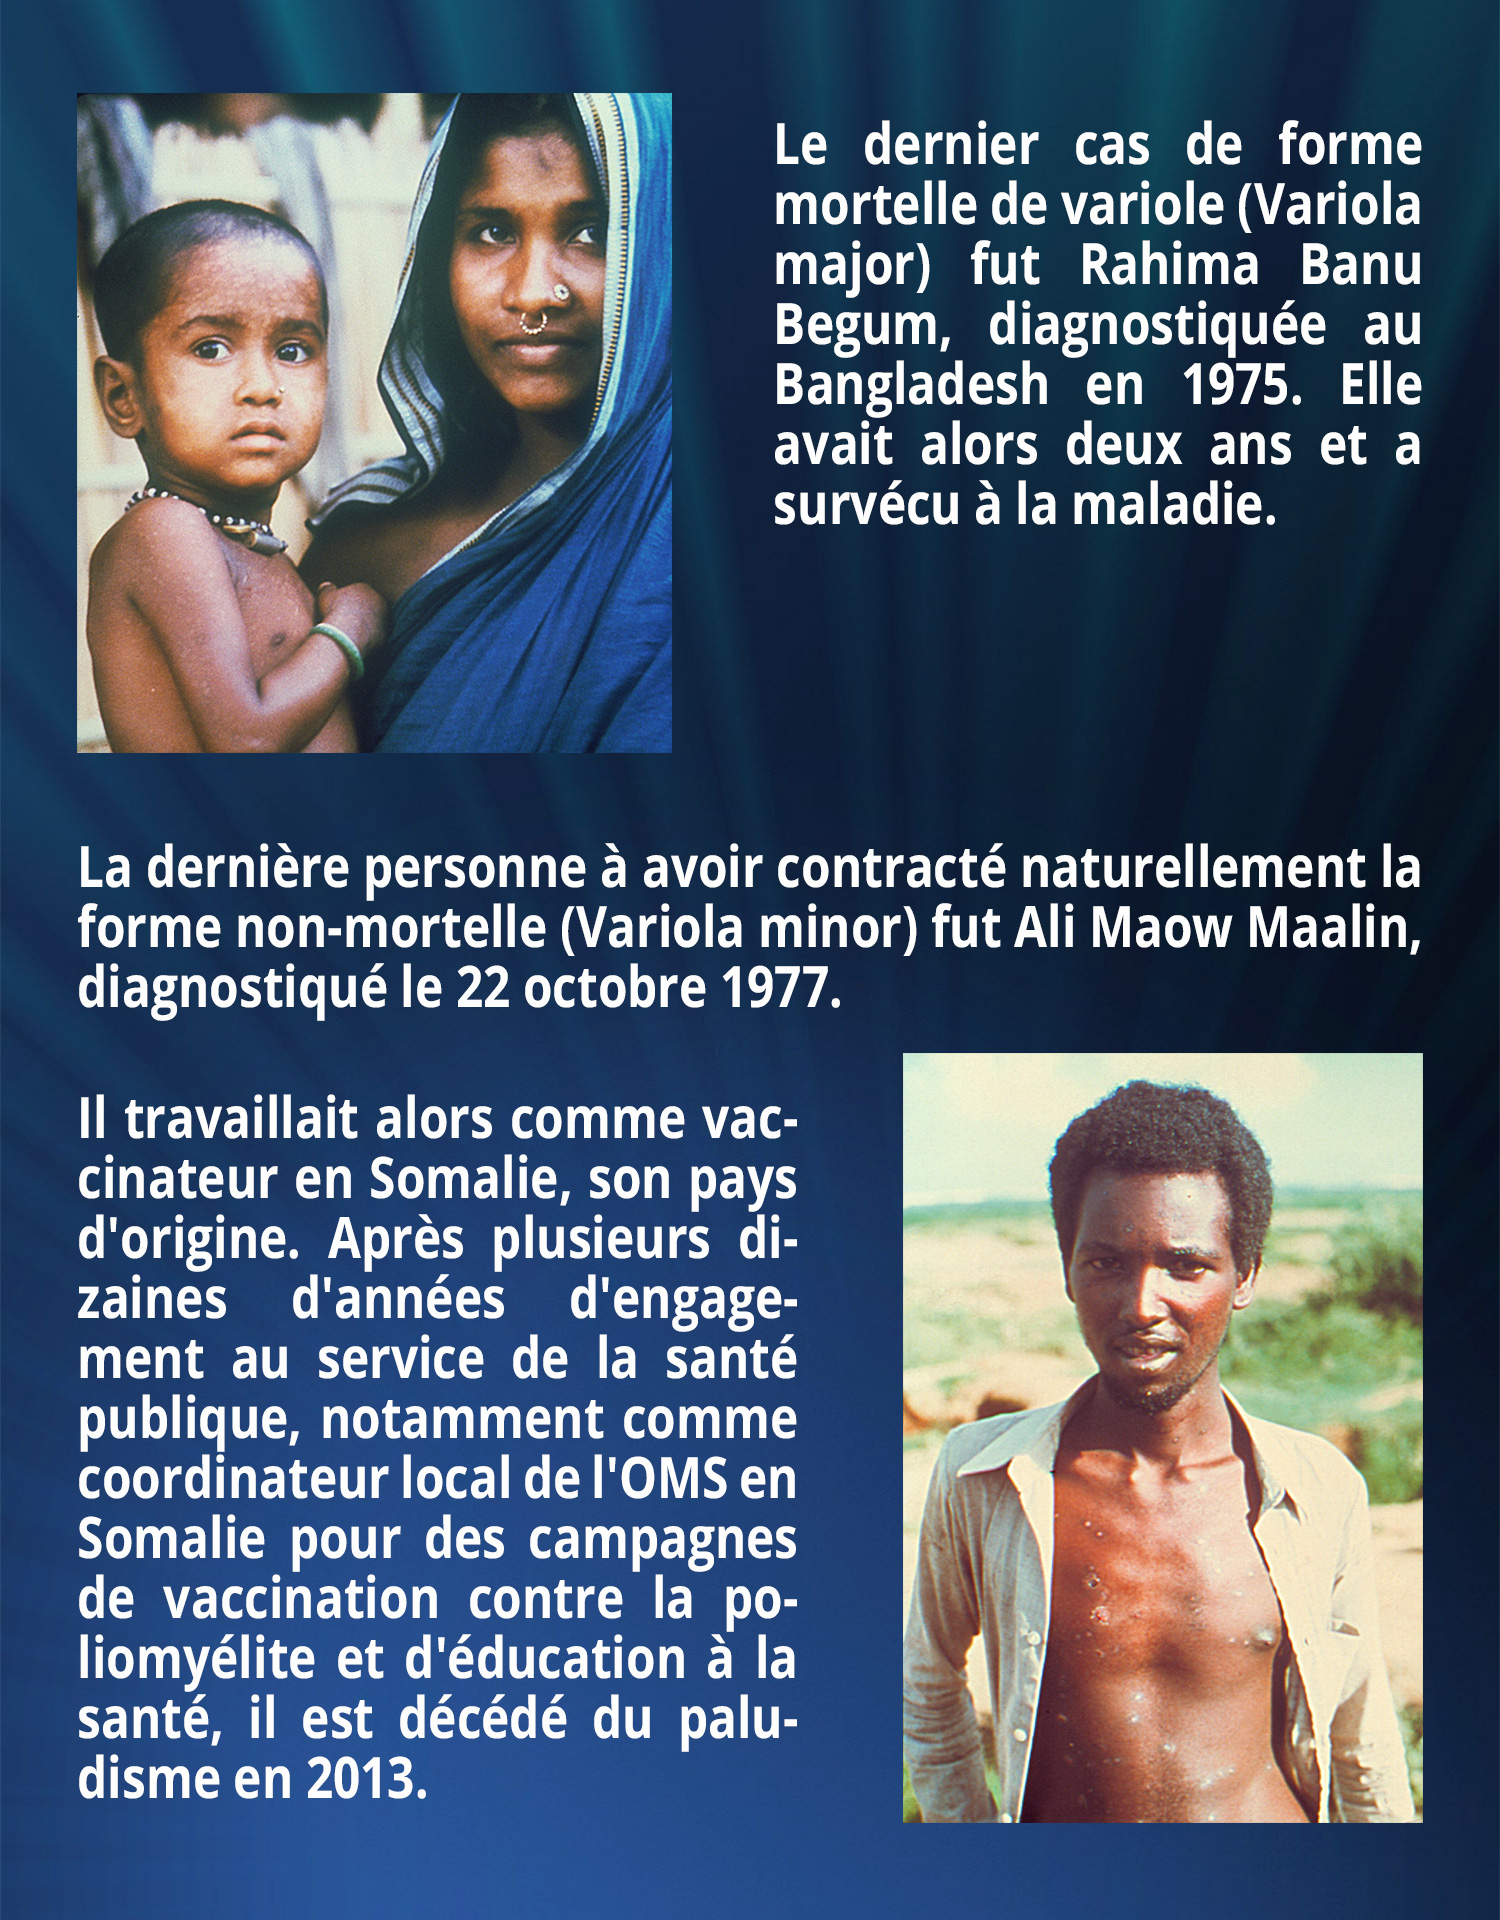 Le dernier cas de forme mortelle de variole (Variola major) fut Rahima Banu Begum, diagnostiquée au Bangladesh en 1975. Elle avait alors deux ans et a survécu à la maladie. La dernière personne à avoir contracté naturellement la forme non-mortelle (Variola minor) fut Ali Maow Maalin, diagnostiqué le 22 octobre 1977. Il travaillait alors comme vaccinateur en Somalie, son pays d'origine. Après plusieurs dizaines d'années d'engagement au service de la santé publique, notamment comme coordinateur local de l'OMS en Somalie pour des campagnes de vaccination contre la poliomyélite et d'éducation à la santé, il est décédé du paludisme en 2013.